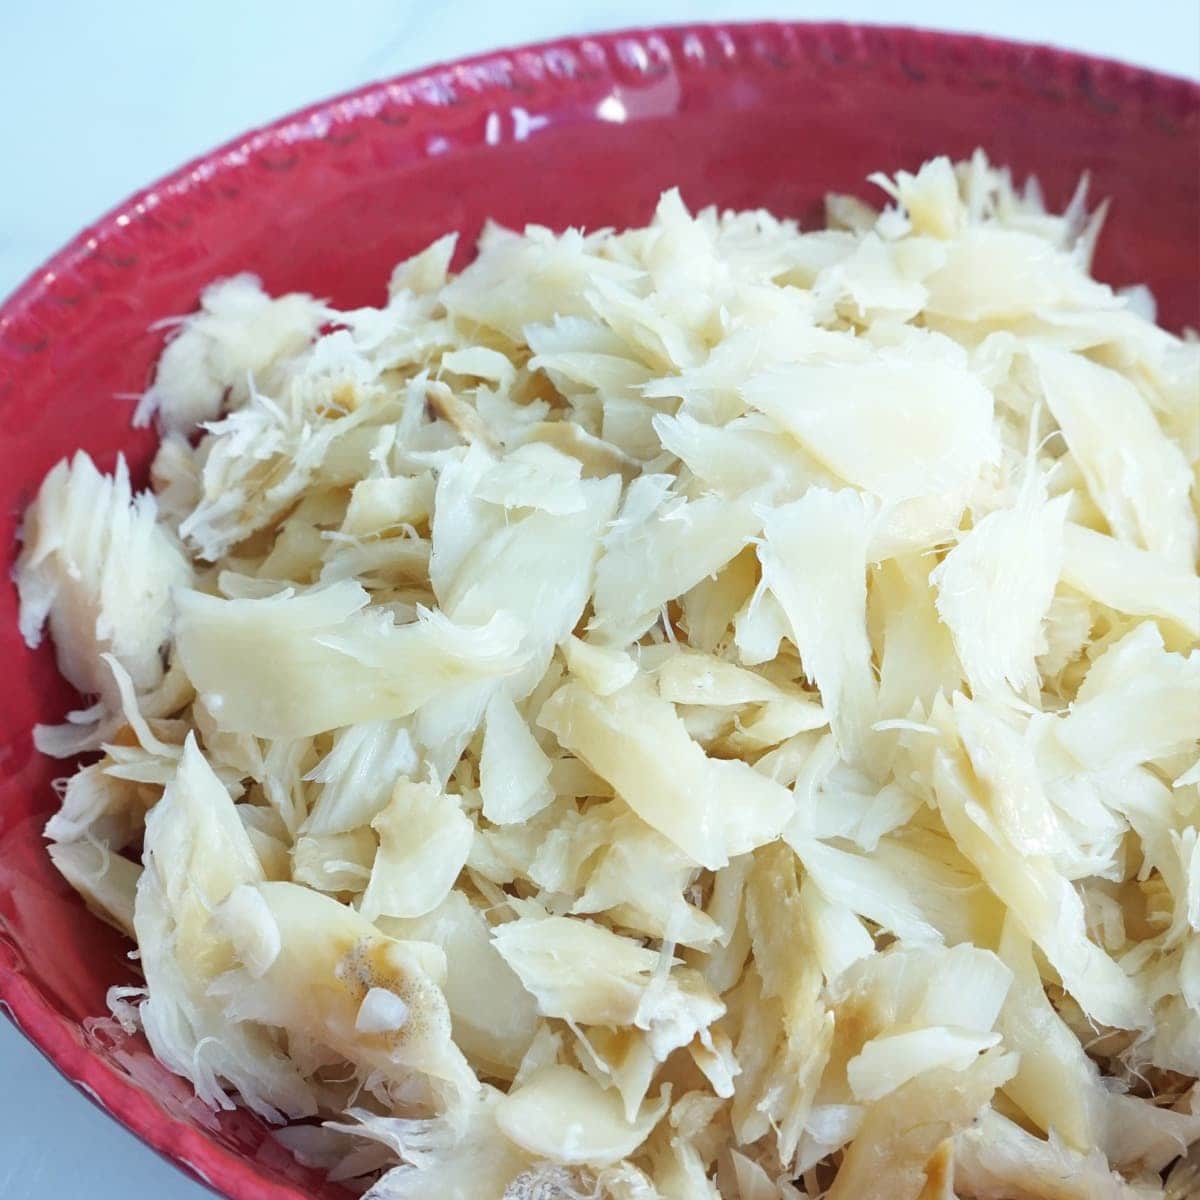 Shredded bacalhau (salted cod)